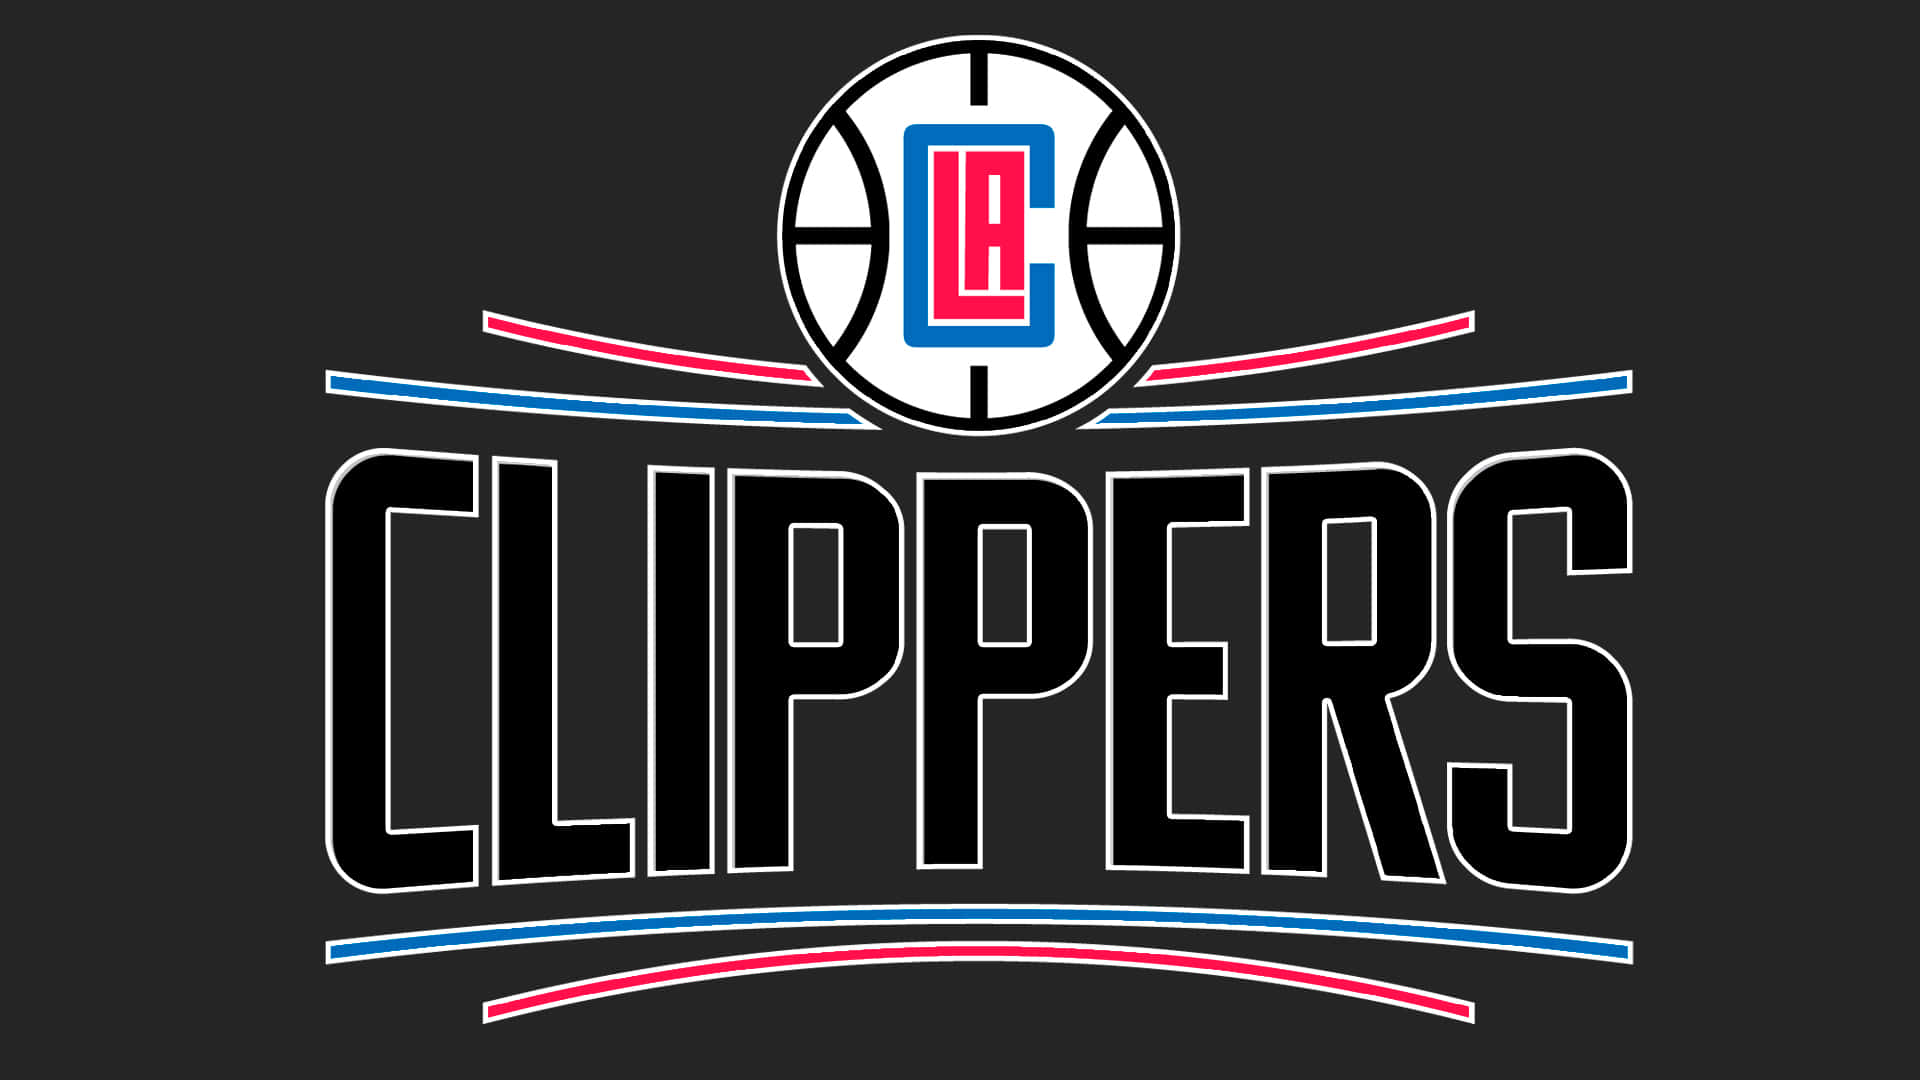 Imágenes De La Clippers